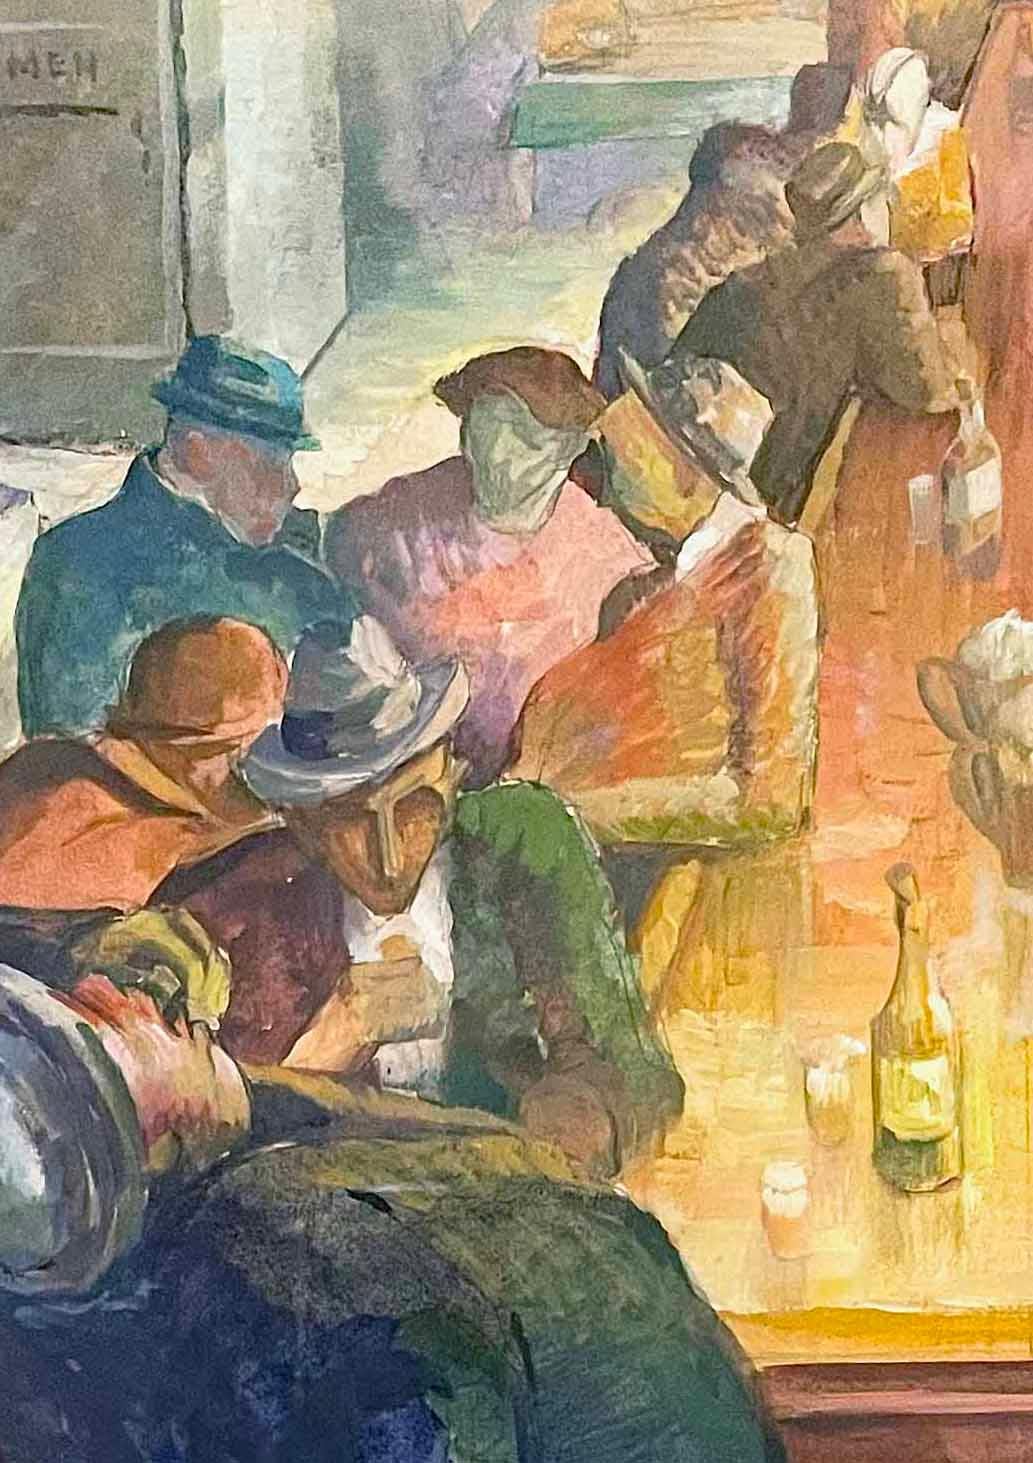 Cette scène typique de l'époque de la dépression représente une série d'hommes dans une taverne, avachis ou accoudés au bord du bar et buvant des verres d'alcool fort.  Les occupants du bar semblent être conviviaux et converser, et le grand homme au